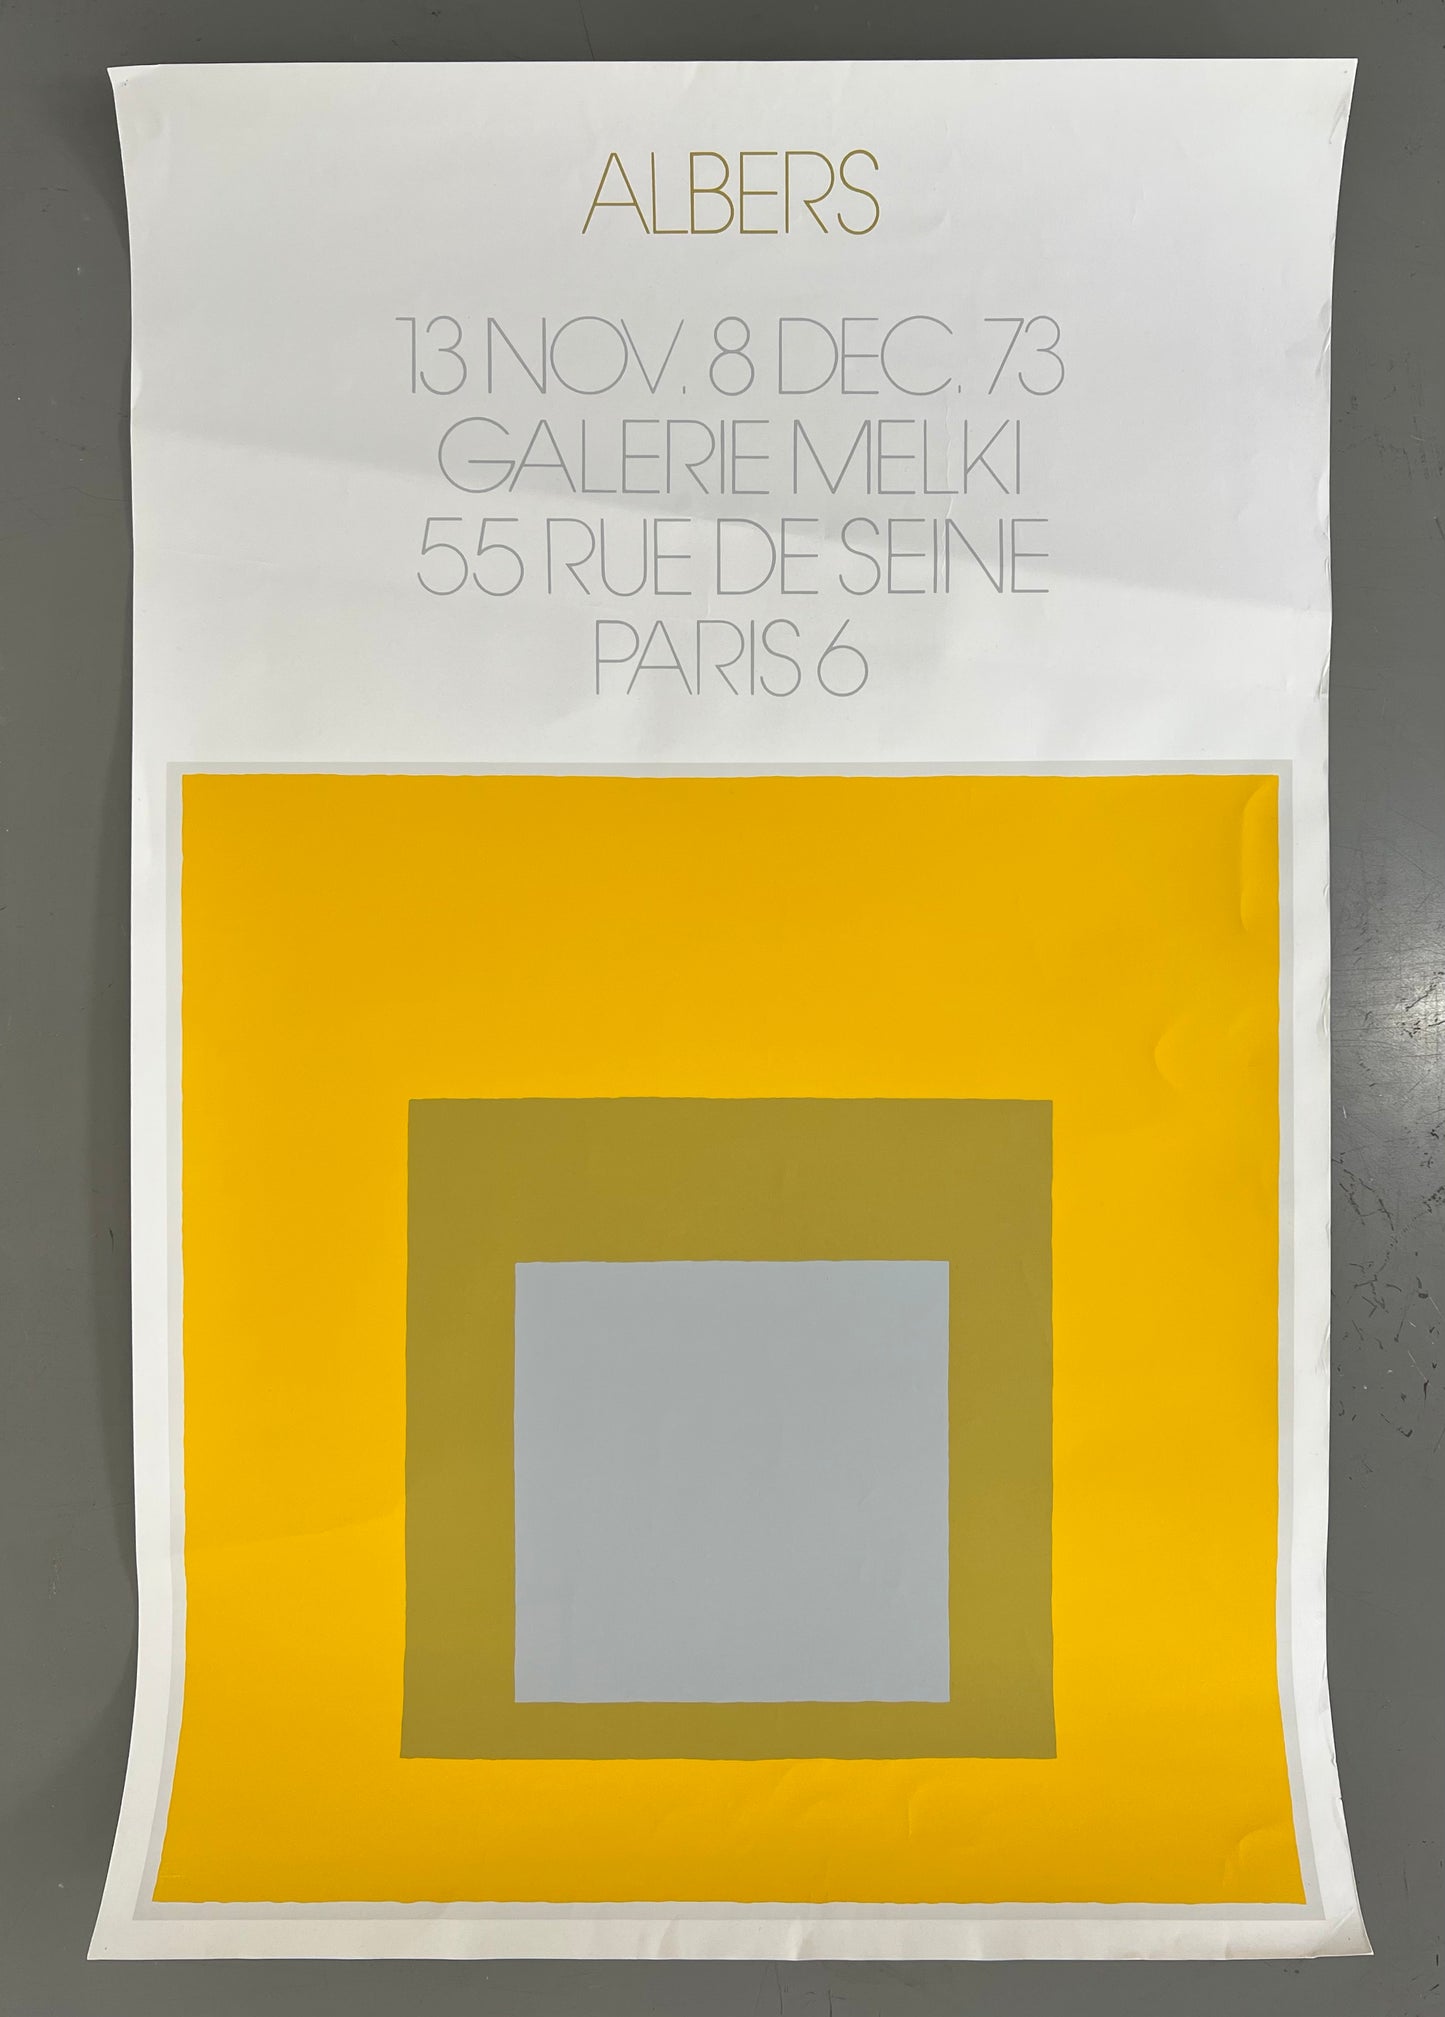 Josef Albers. “Galerie Melki”, 1973